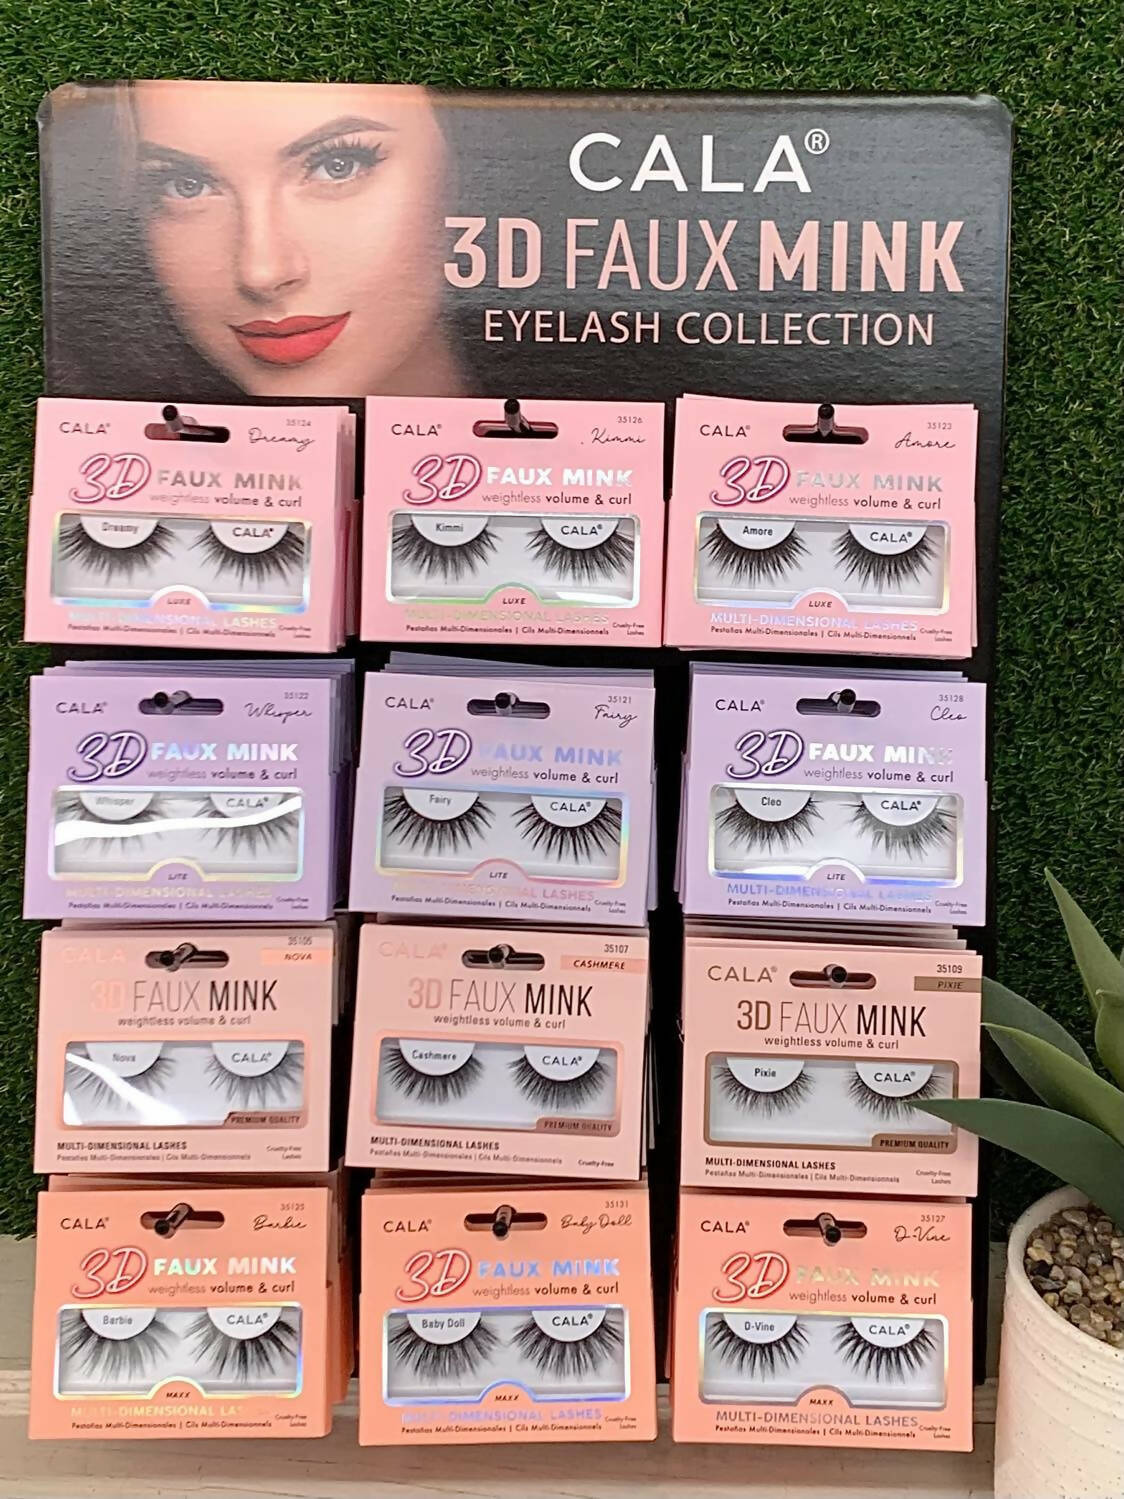 3D Faux Mink Eyelashes